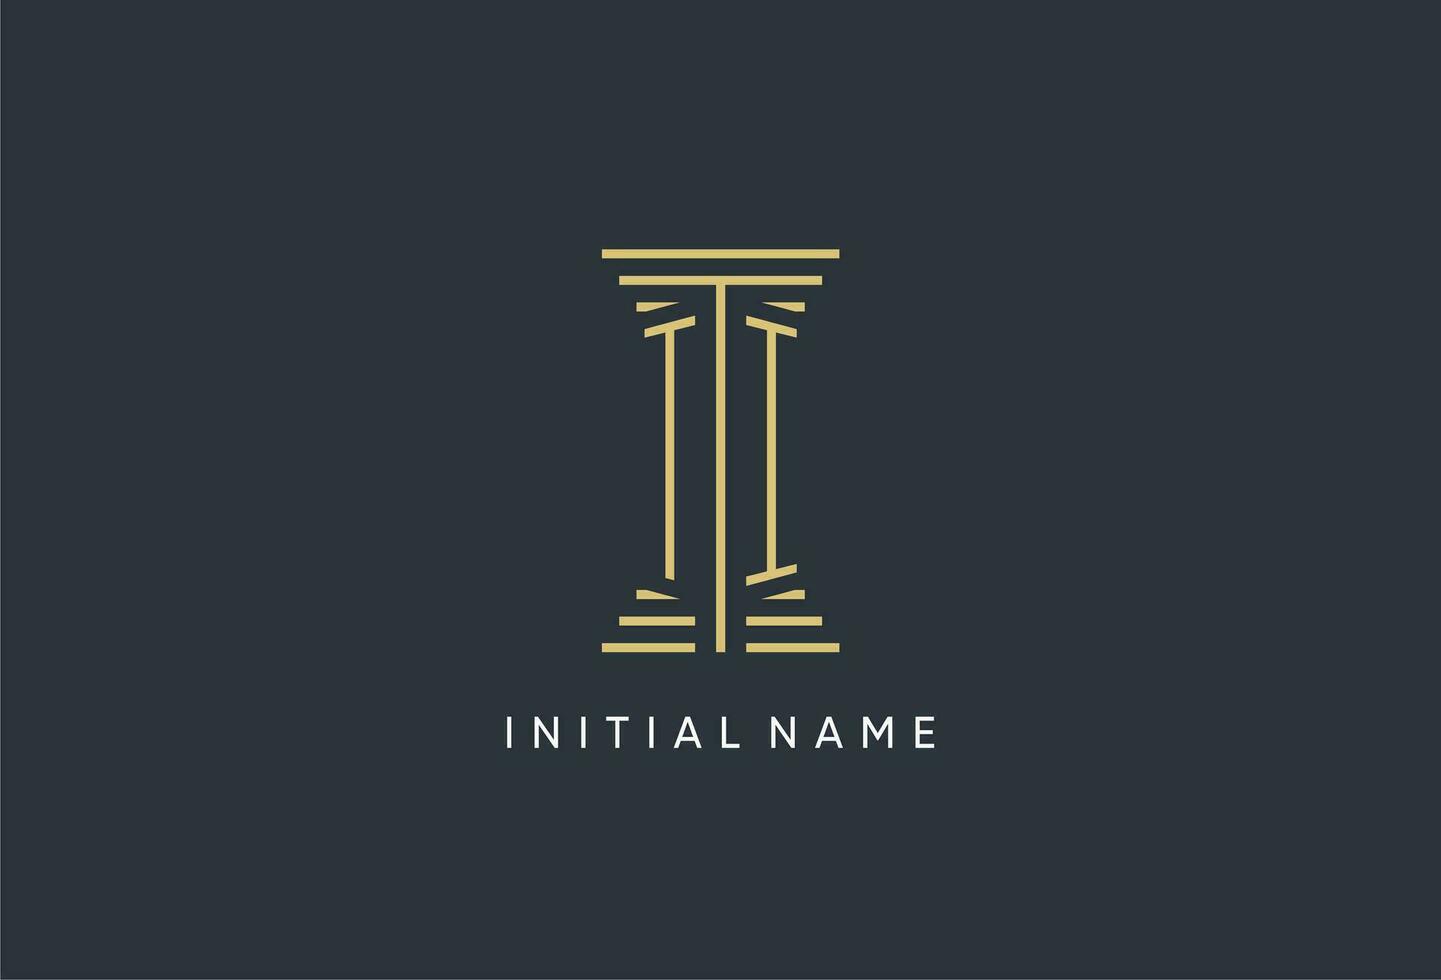 ti Initiale Monogramm mit Säule gestalten Logo Design vektor